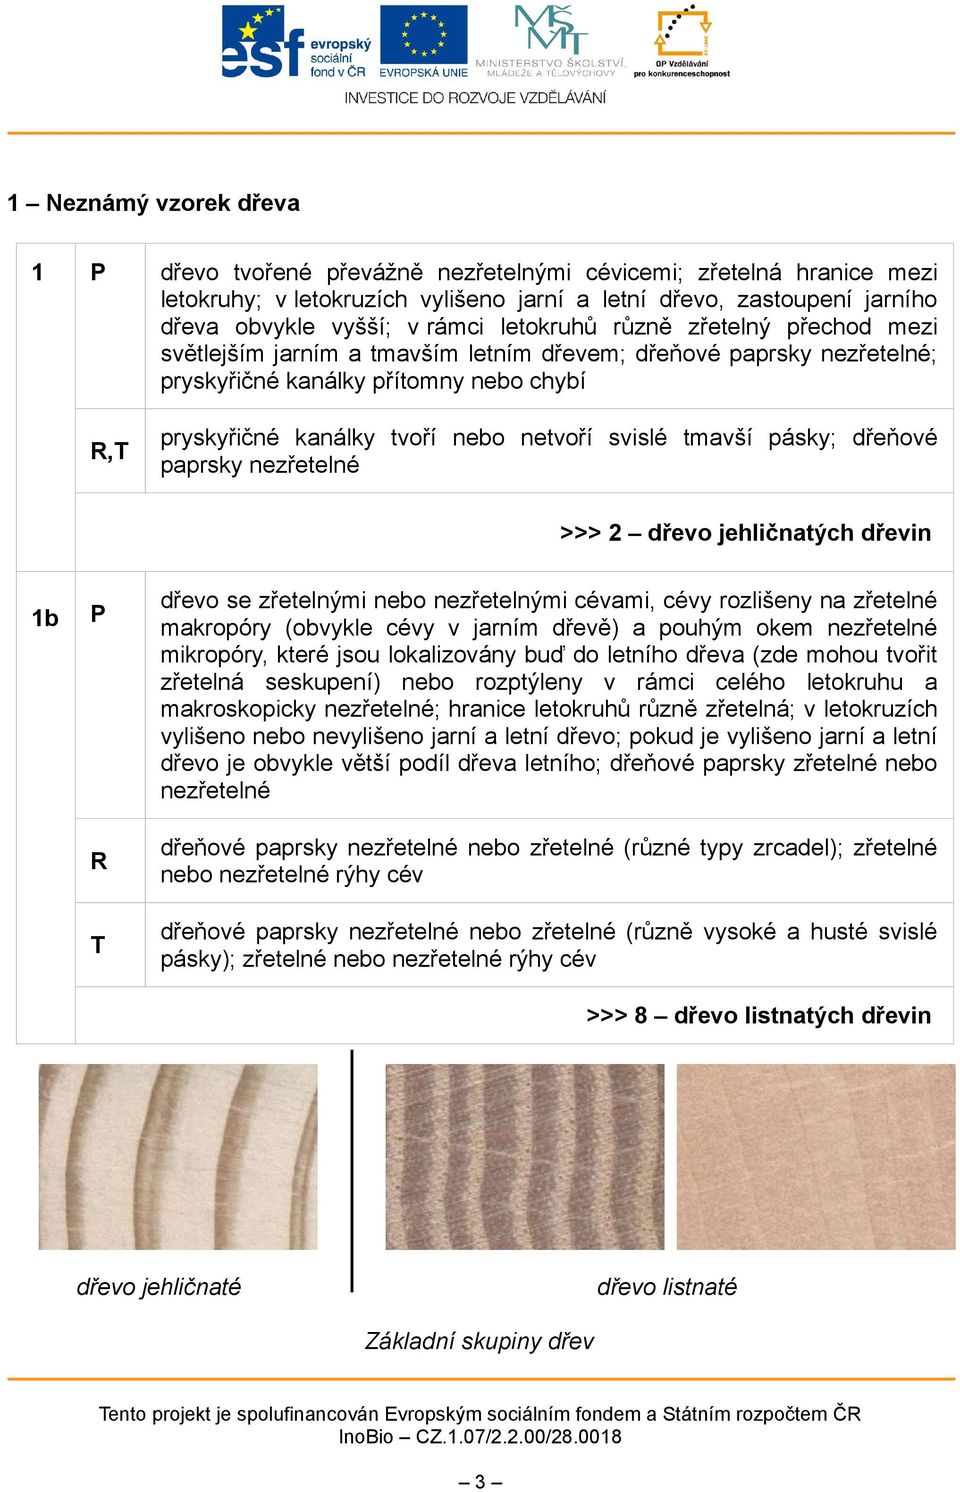 tmavší pásky; dřeňové paprsky nezřetelné >>> 2 dřevo jehličnatých dřevin 1b T dřevo se zřetelnými nebo nezřetelnými cévami, cévy rozlišeny na zřetelné makropóry (obvykle cévy v jarním dřevě) a pouhým